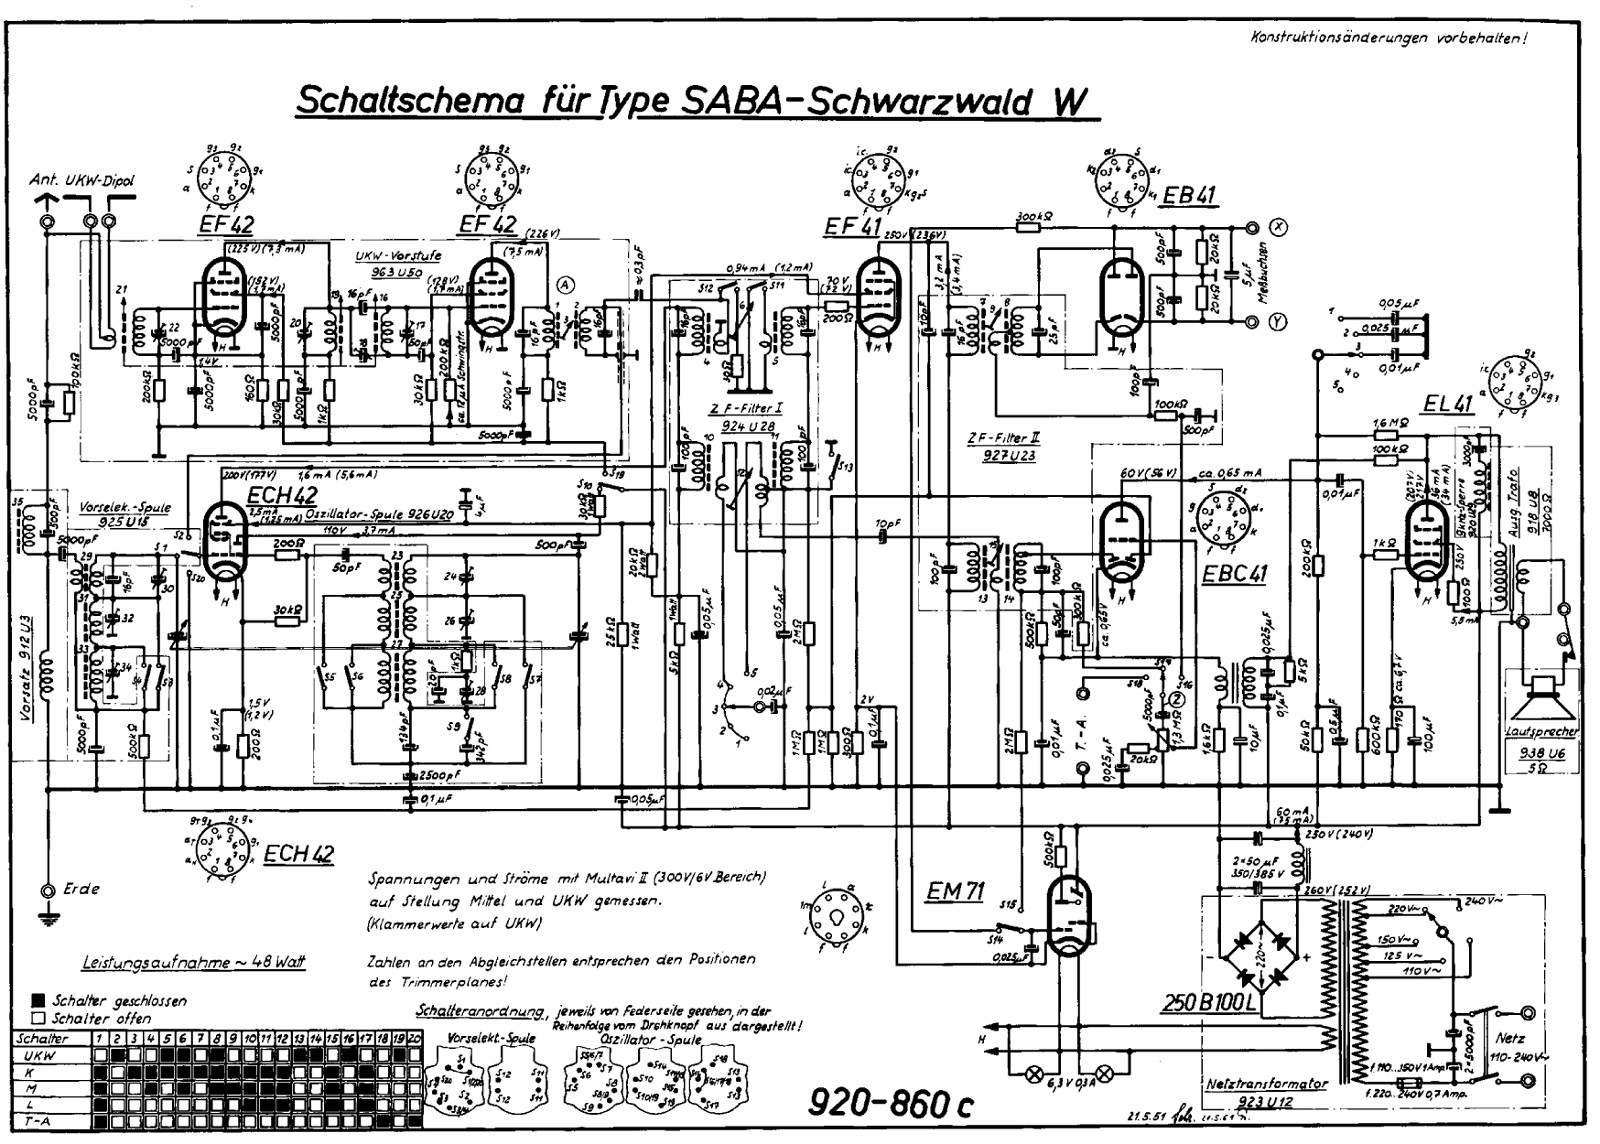 SABA Schwarzwald W schematics